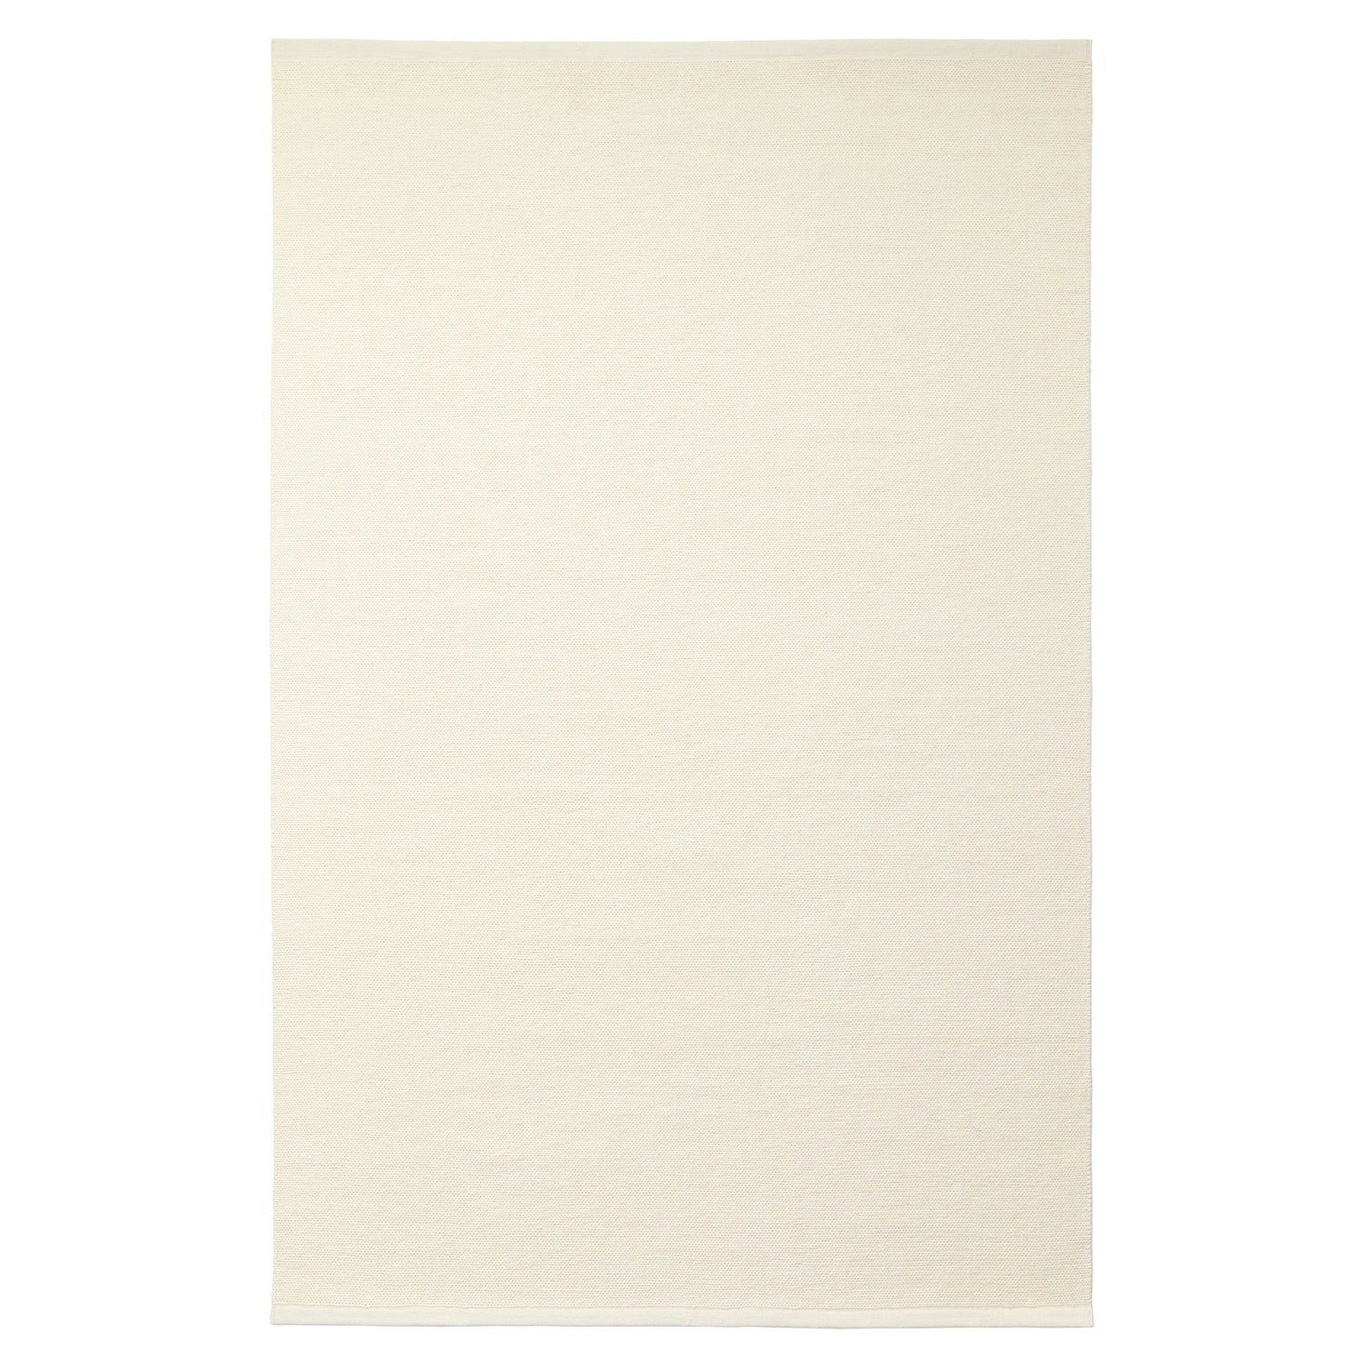 Kashmir Matta Off-white, 250x350 cm